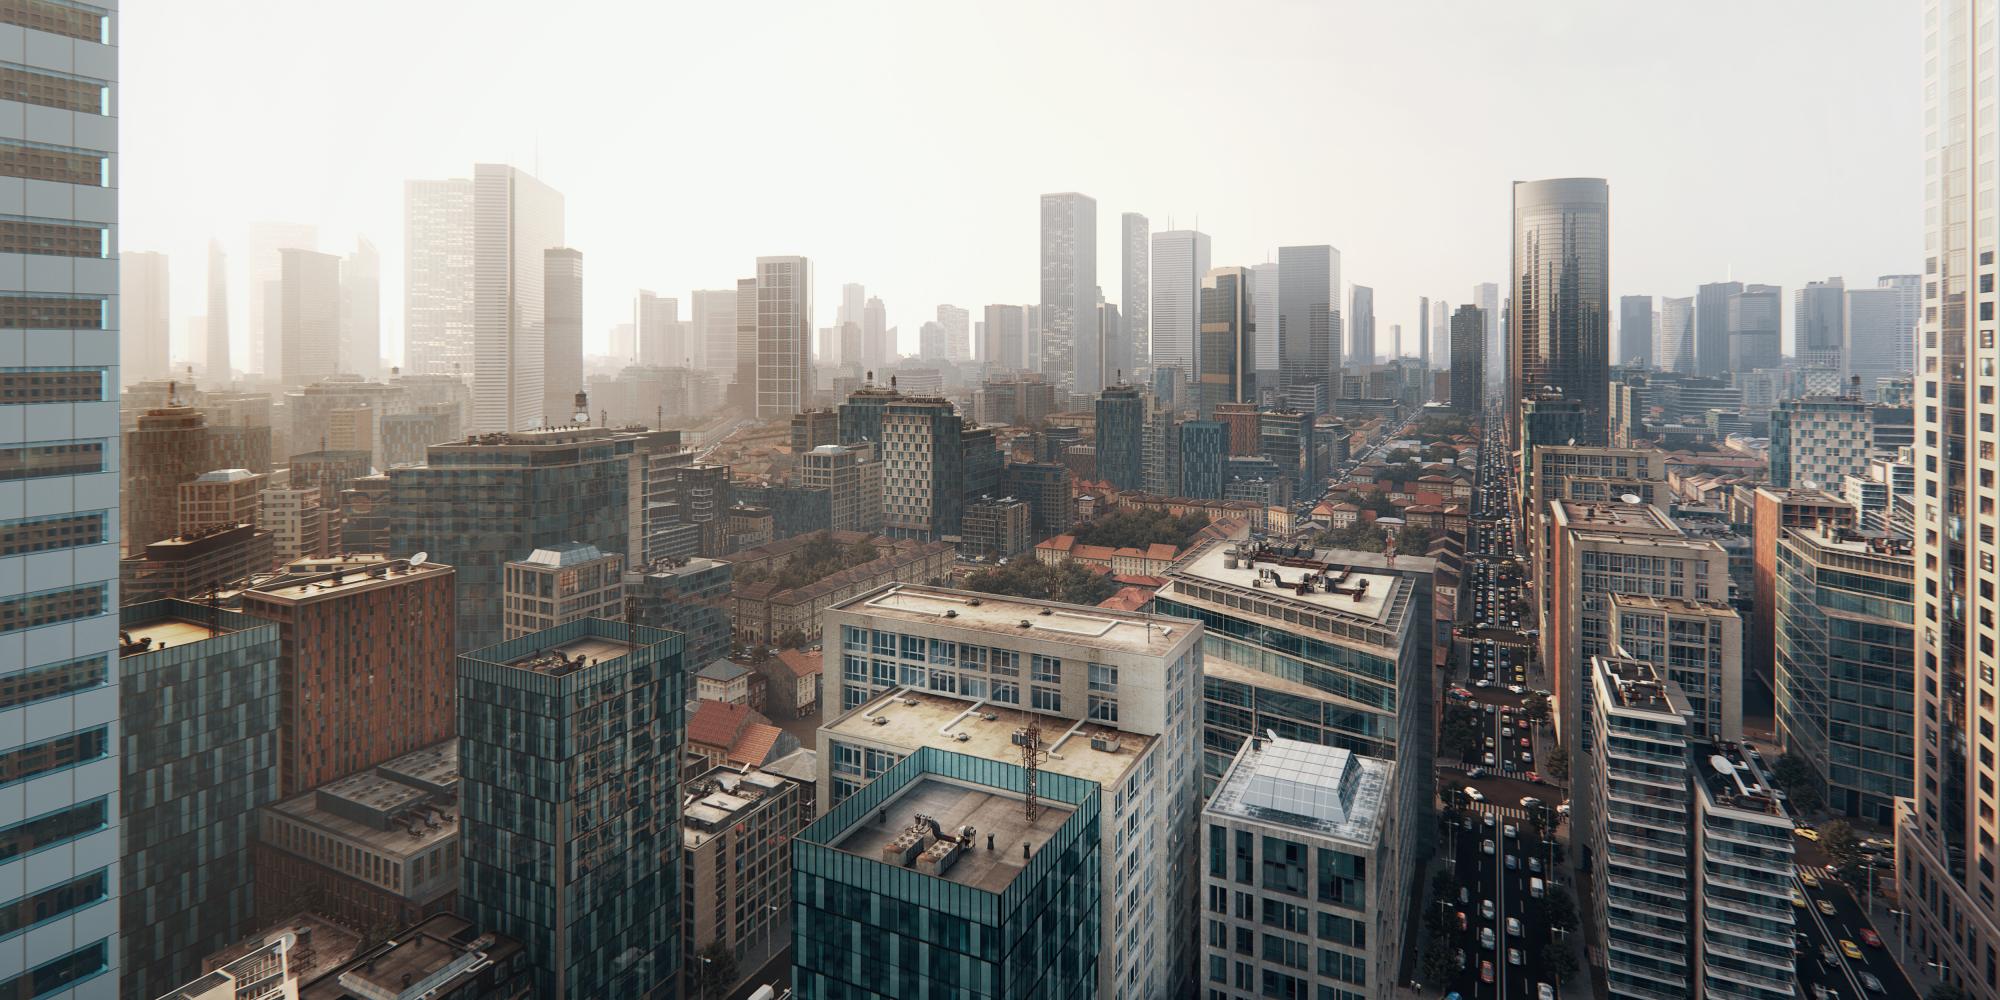 Hướng dẫn - Tạo thành phố với RailClone trong 3ds Max - Muốn tạo ra một thành phố trong 3ds Max một cách dễ dàng và nhanh chóng? Hãy khám phá hướng dẫn sử dụng RailClone - công cụ mang đến cho bạn sự linh hoạt trong thiết kế không gian đô thị.